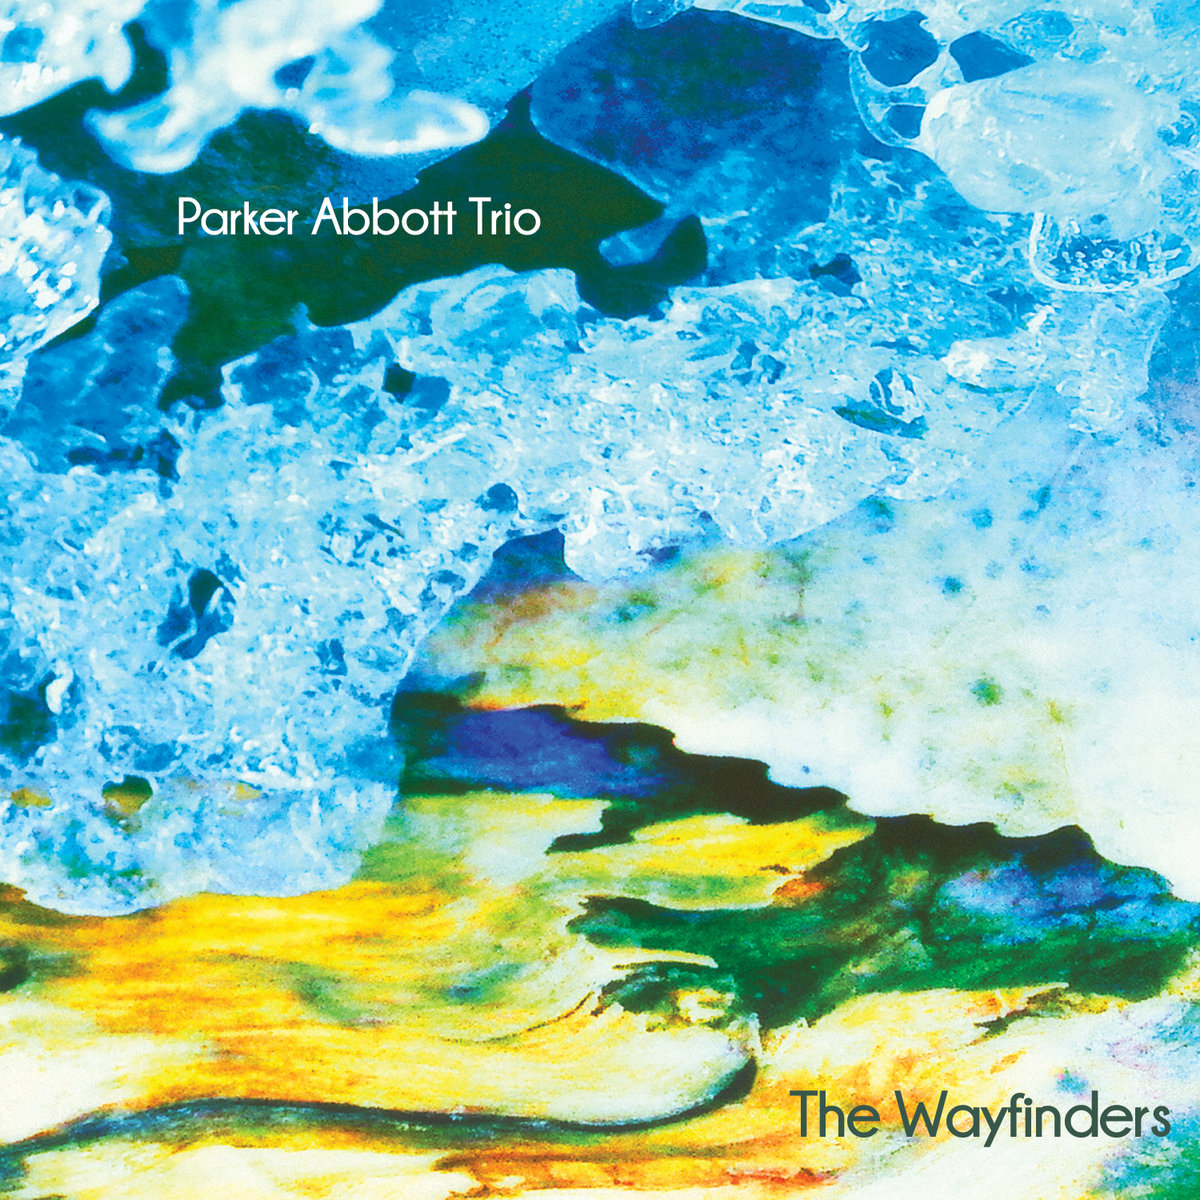 Parker Abbott Trio - The Wayfinders